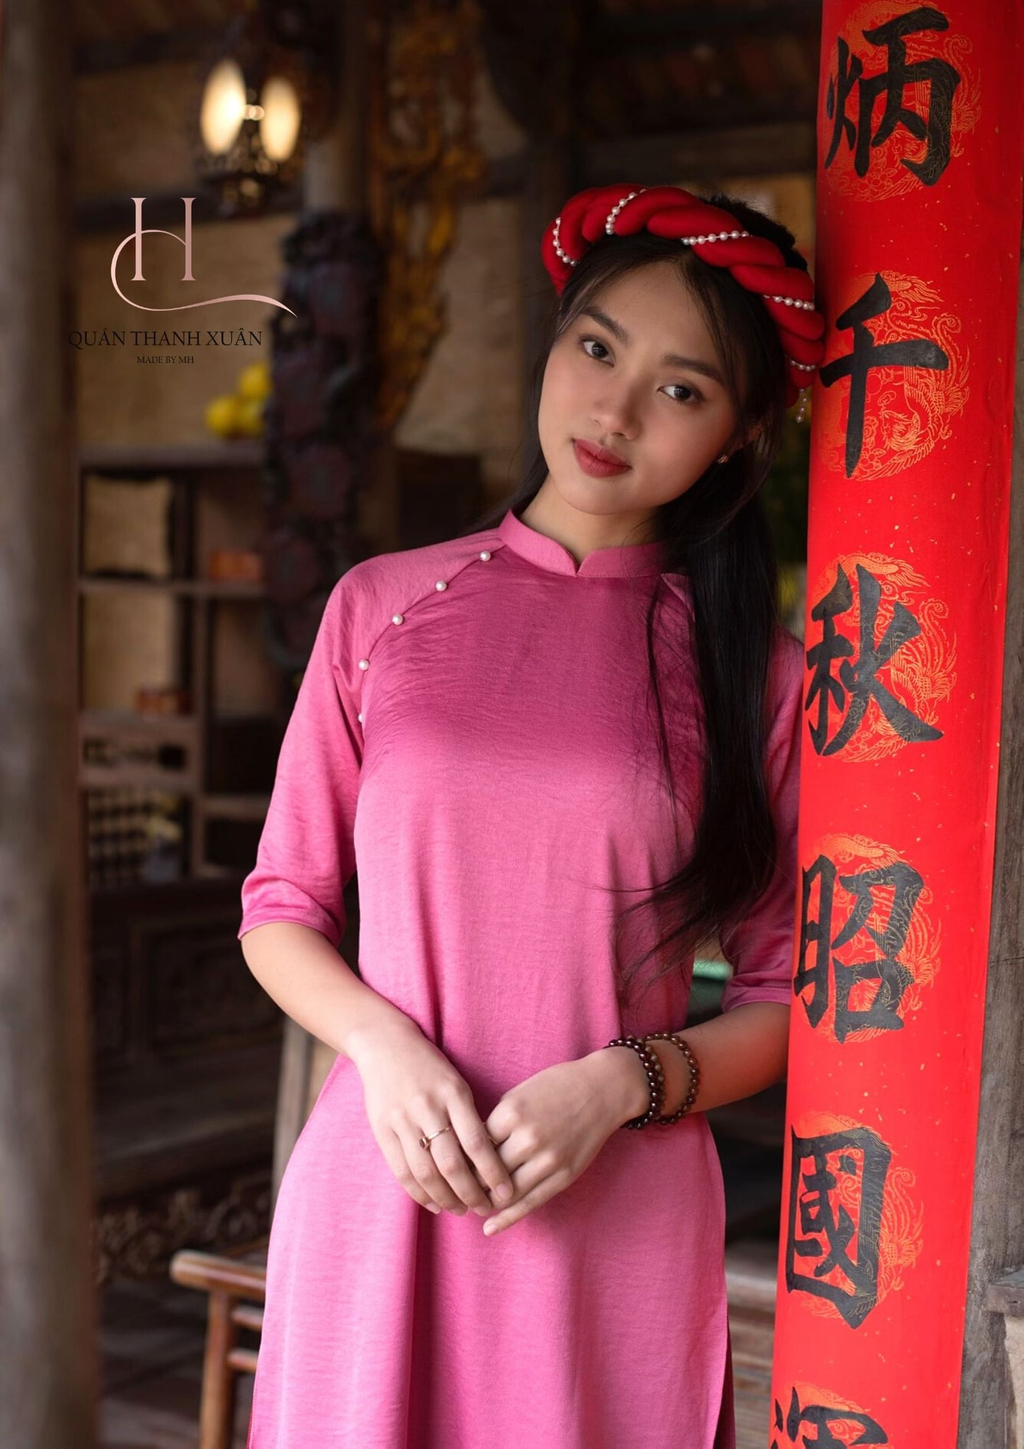 Thiên hẳn về phong cách Hà Nội xưa, những thiết kế áo dài của Quán Thanh Xuân như đưa bạn trở về với hoài niệm xưa cũ. Khi đó chỉ cần một mái tóc xõa ngang vai, một chiếc mấn đội đầu là nàng nào cũng trở nên xinh đẹp, duyên dáng vô cùng trong 3 ngày Tết.